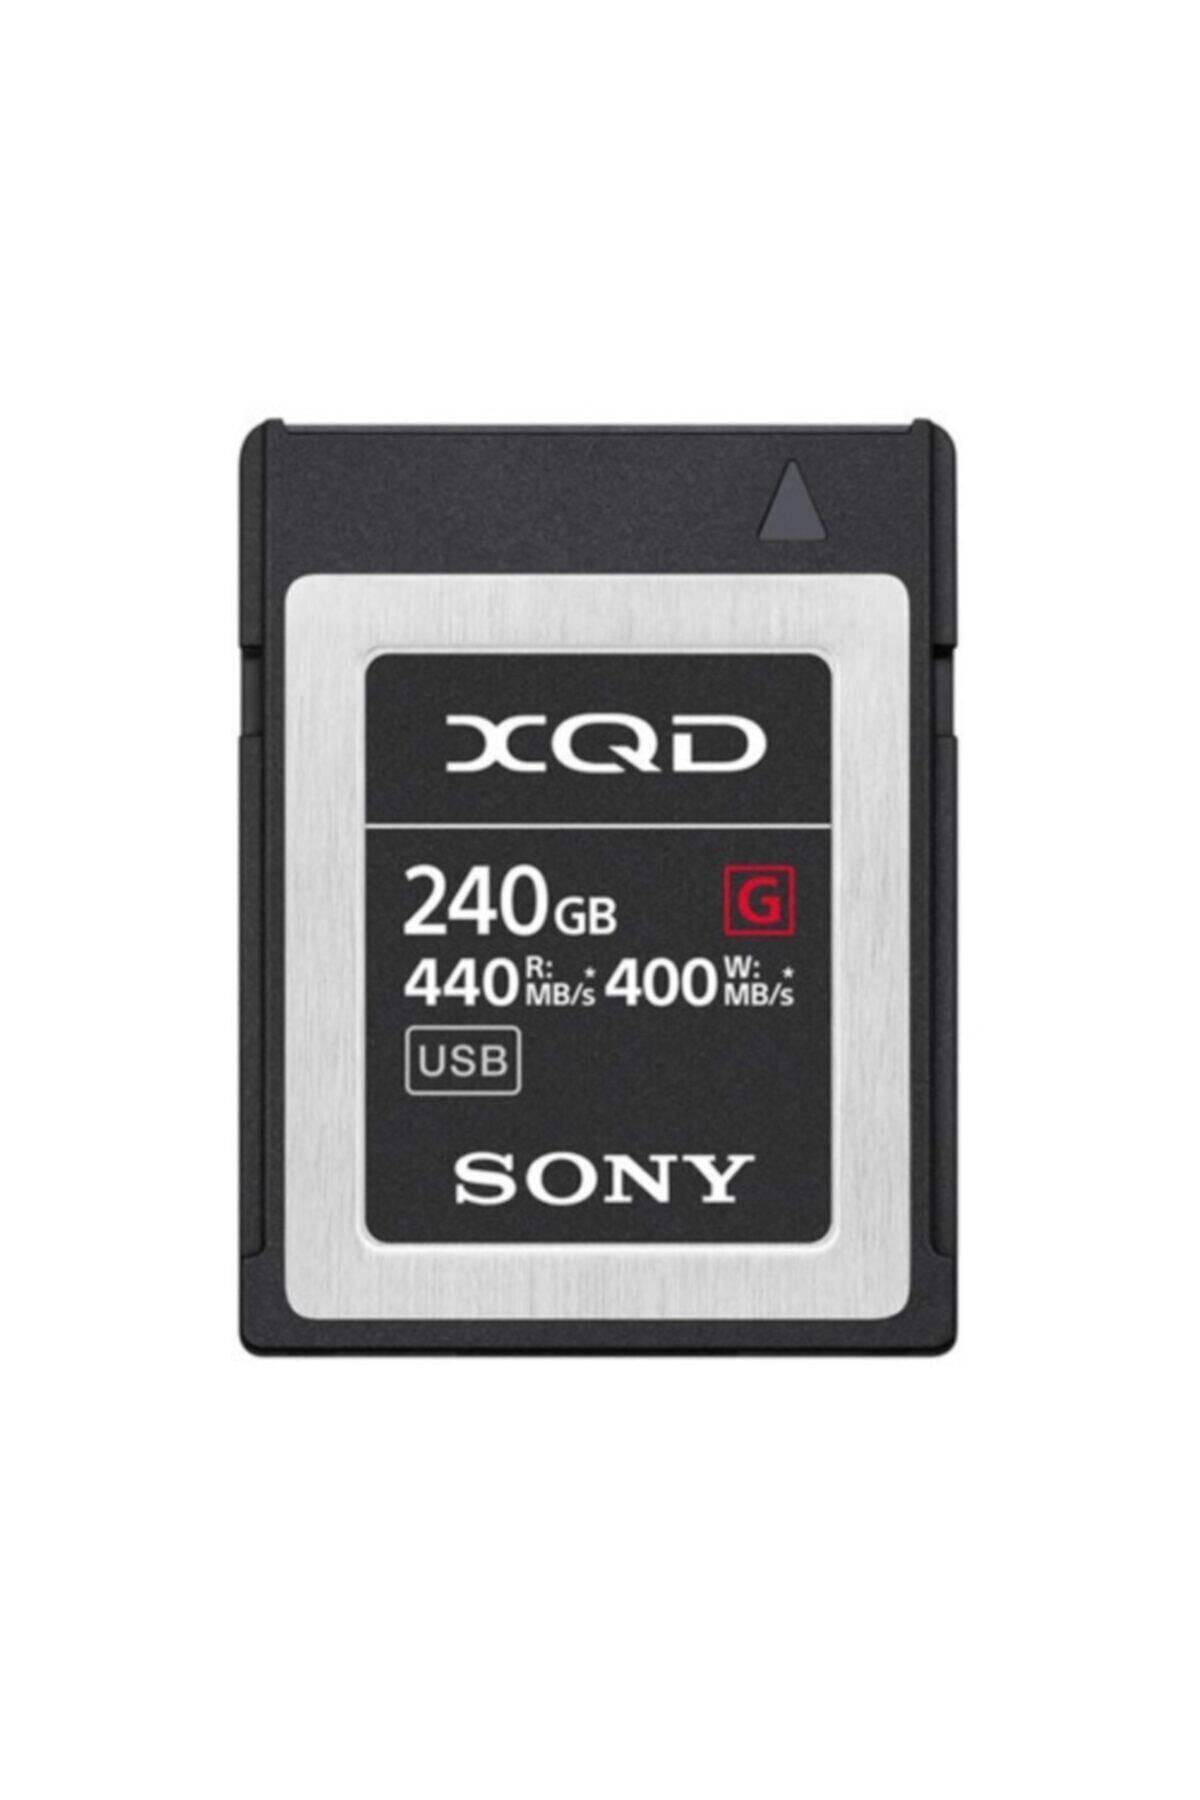 Sony 240gb G Series Xqd 440 mb/s Hafıza Kartı